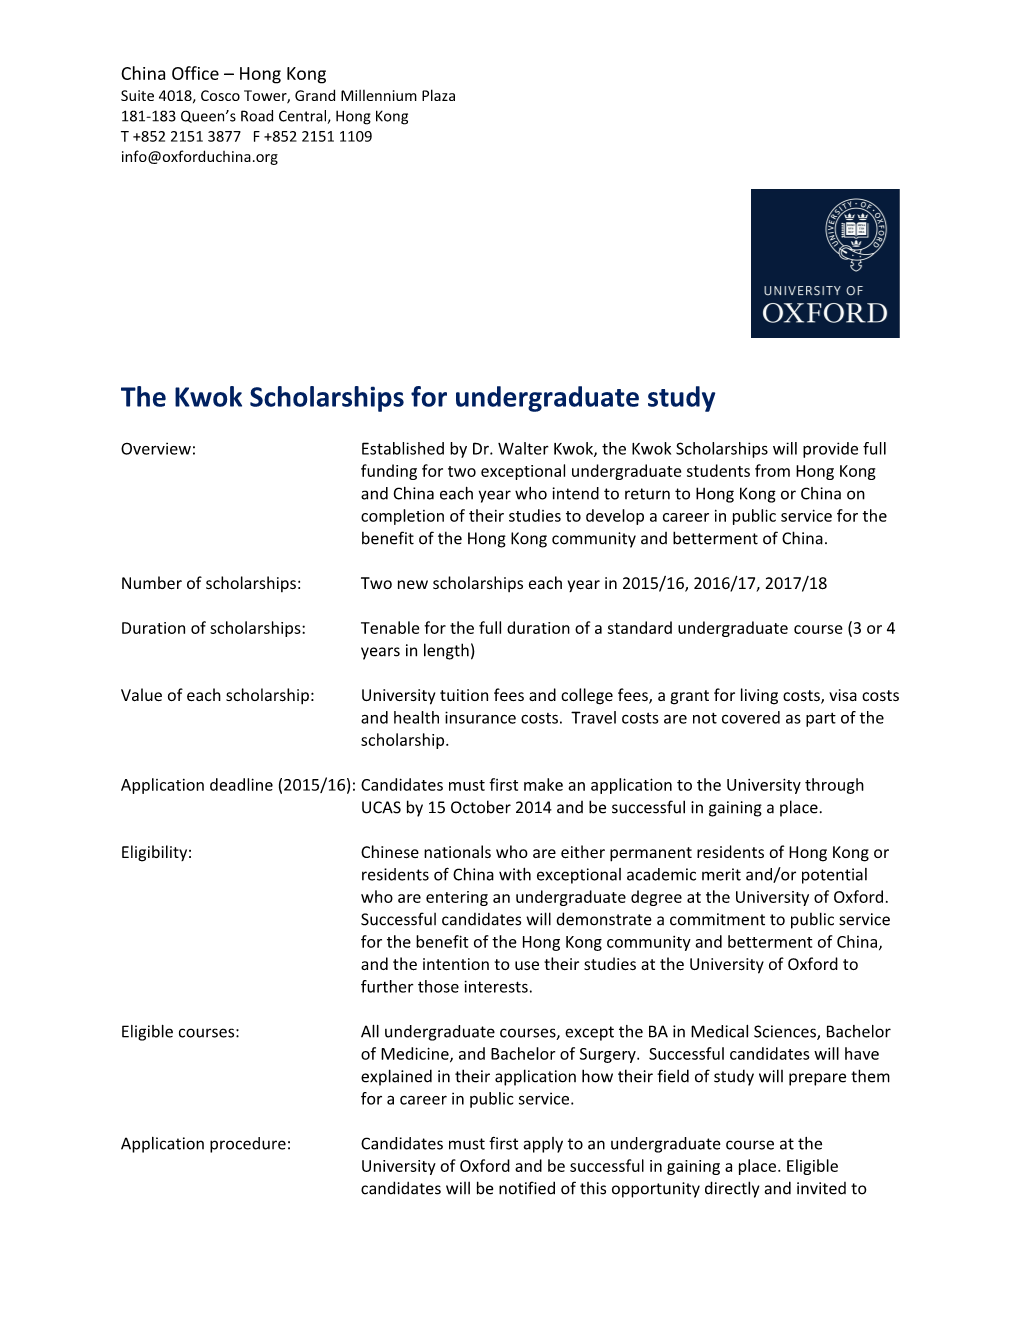 The Kwok Scholarshipsfor Undergraduate Study